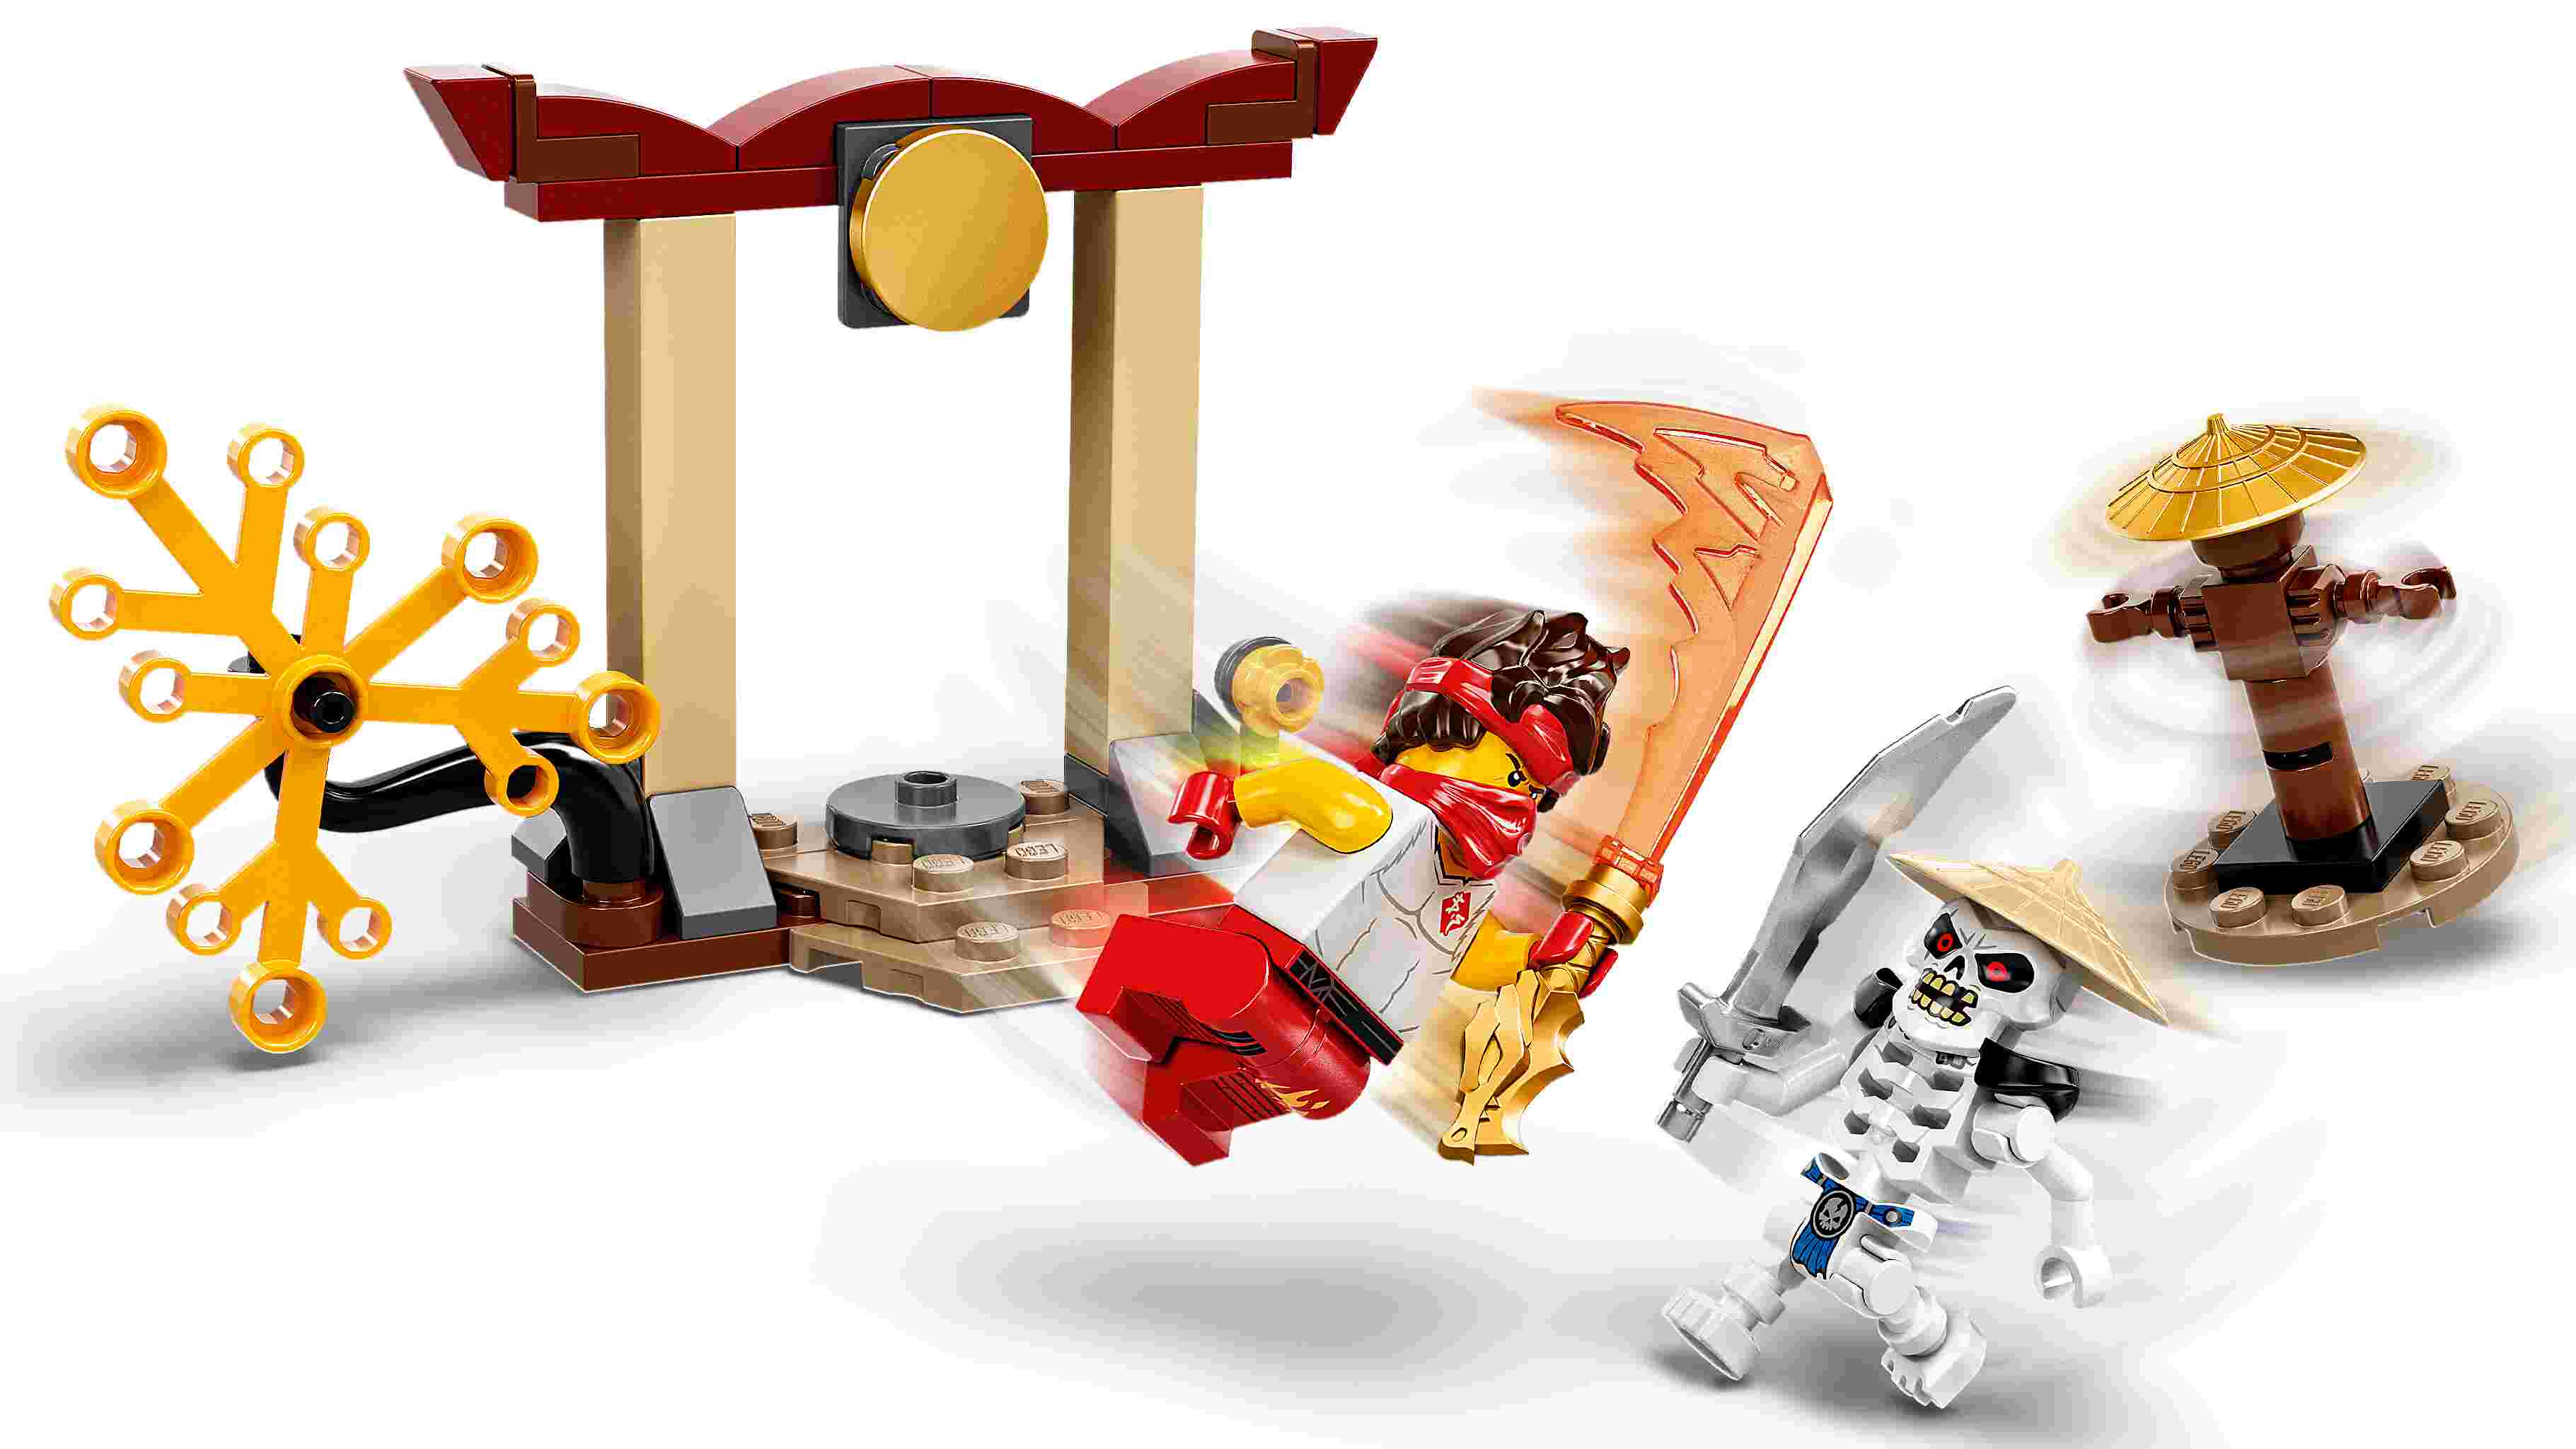 LEGO 71730 NINJAGO Battle Set: Kai vs. Skulkin mit Actionkreisel